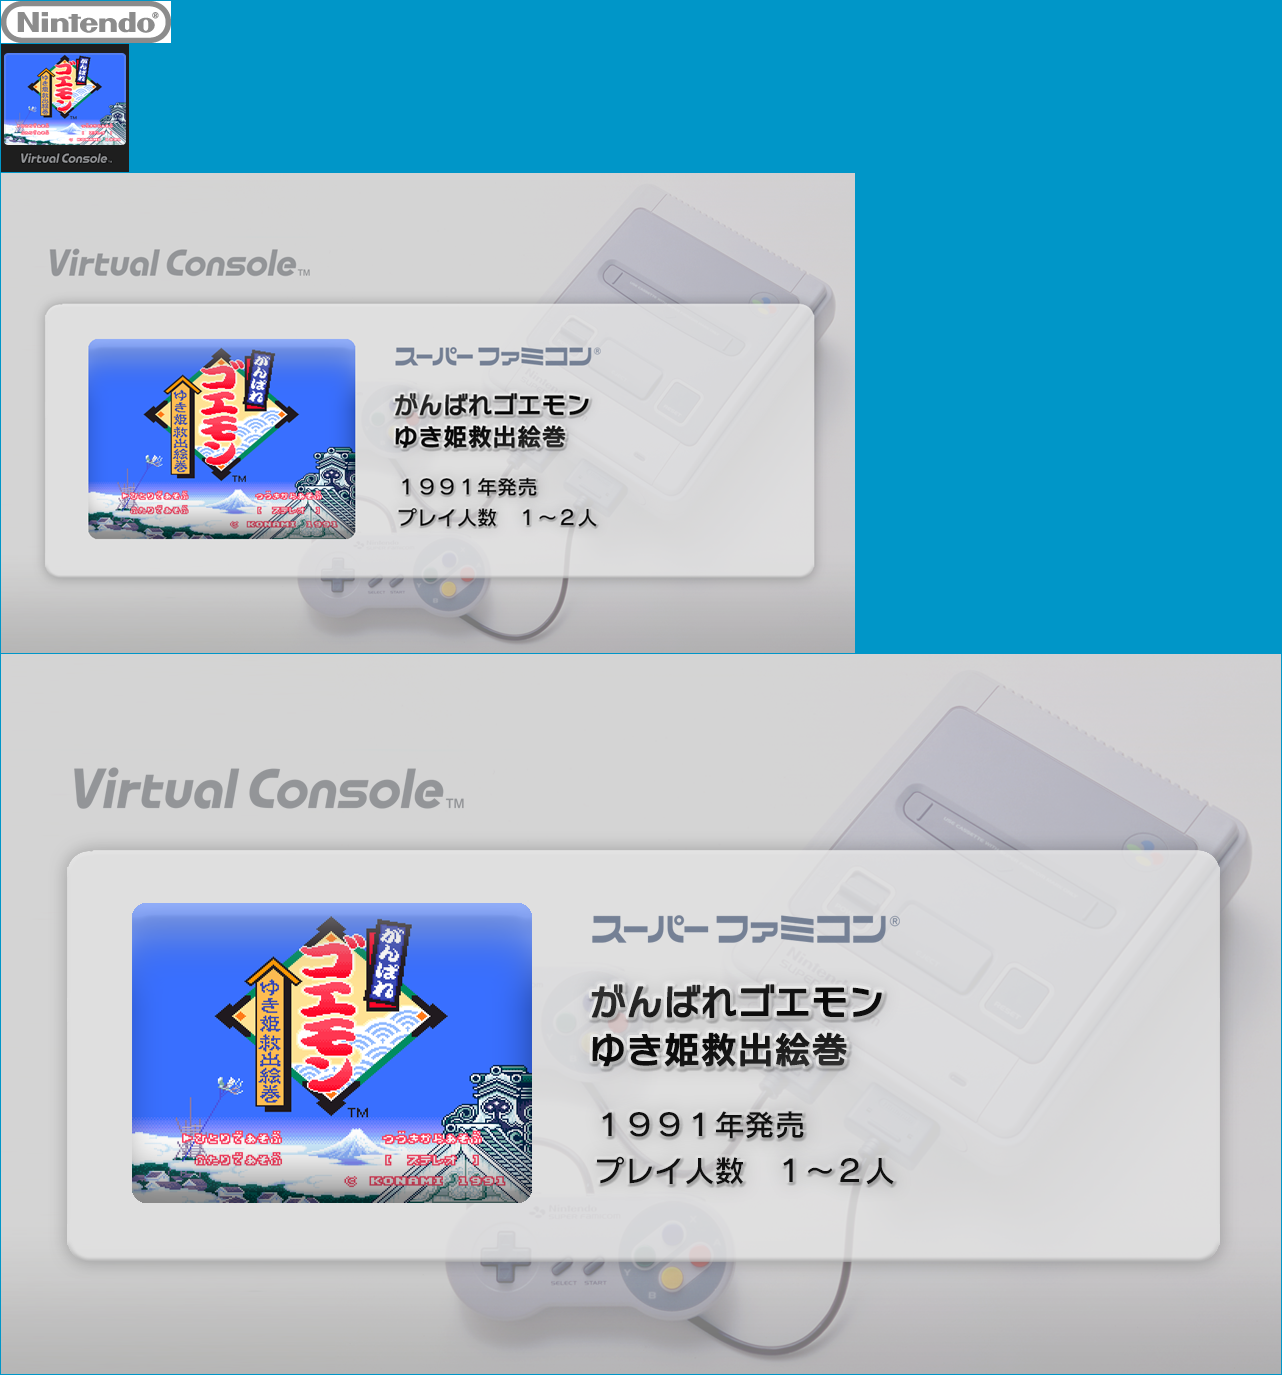 Virtual Console - Ganbare Goemon: Yukihime Kyūshutsu Emaki